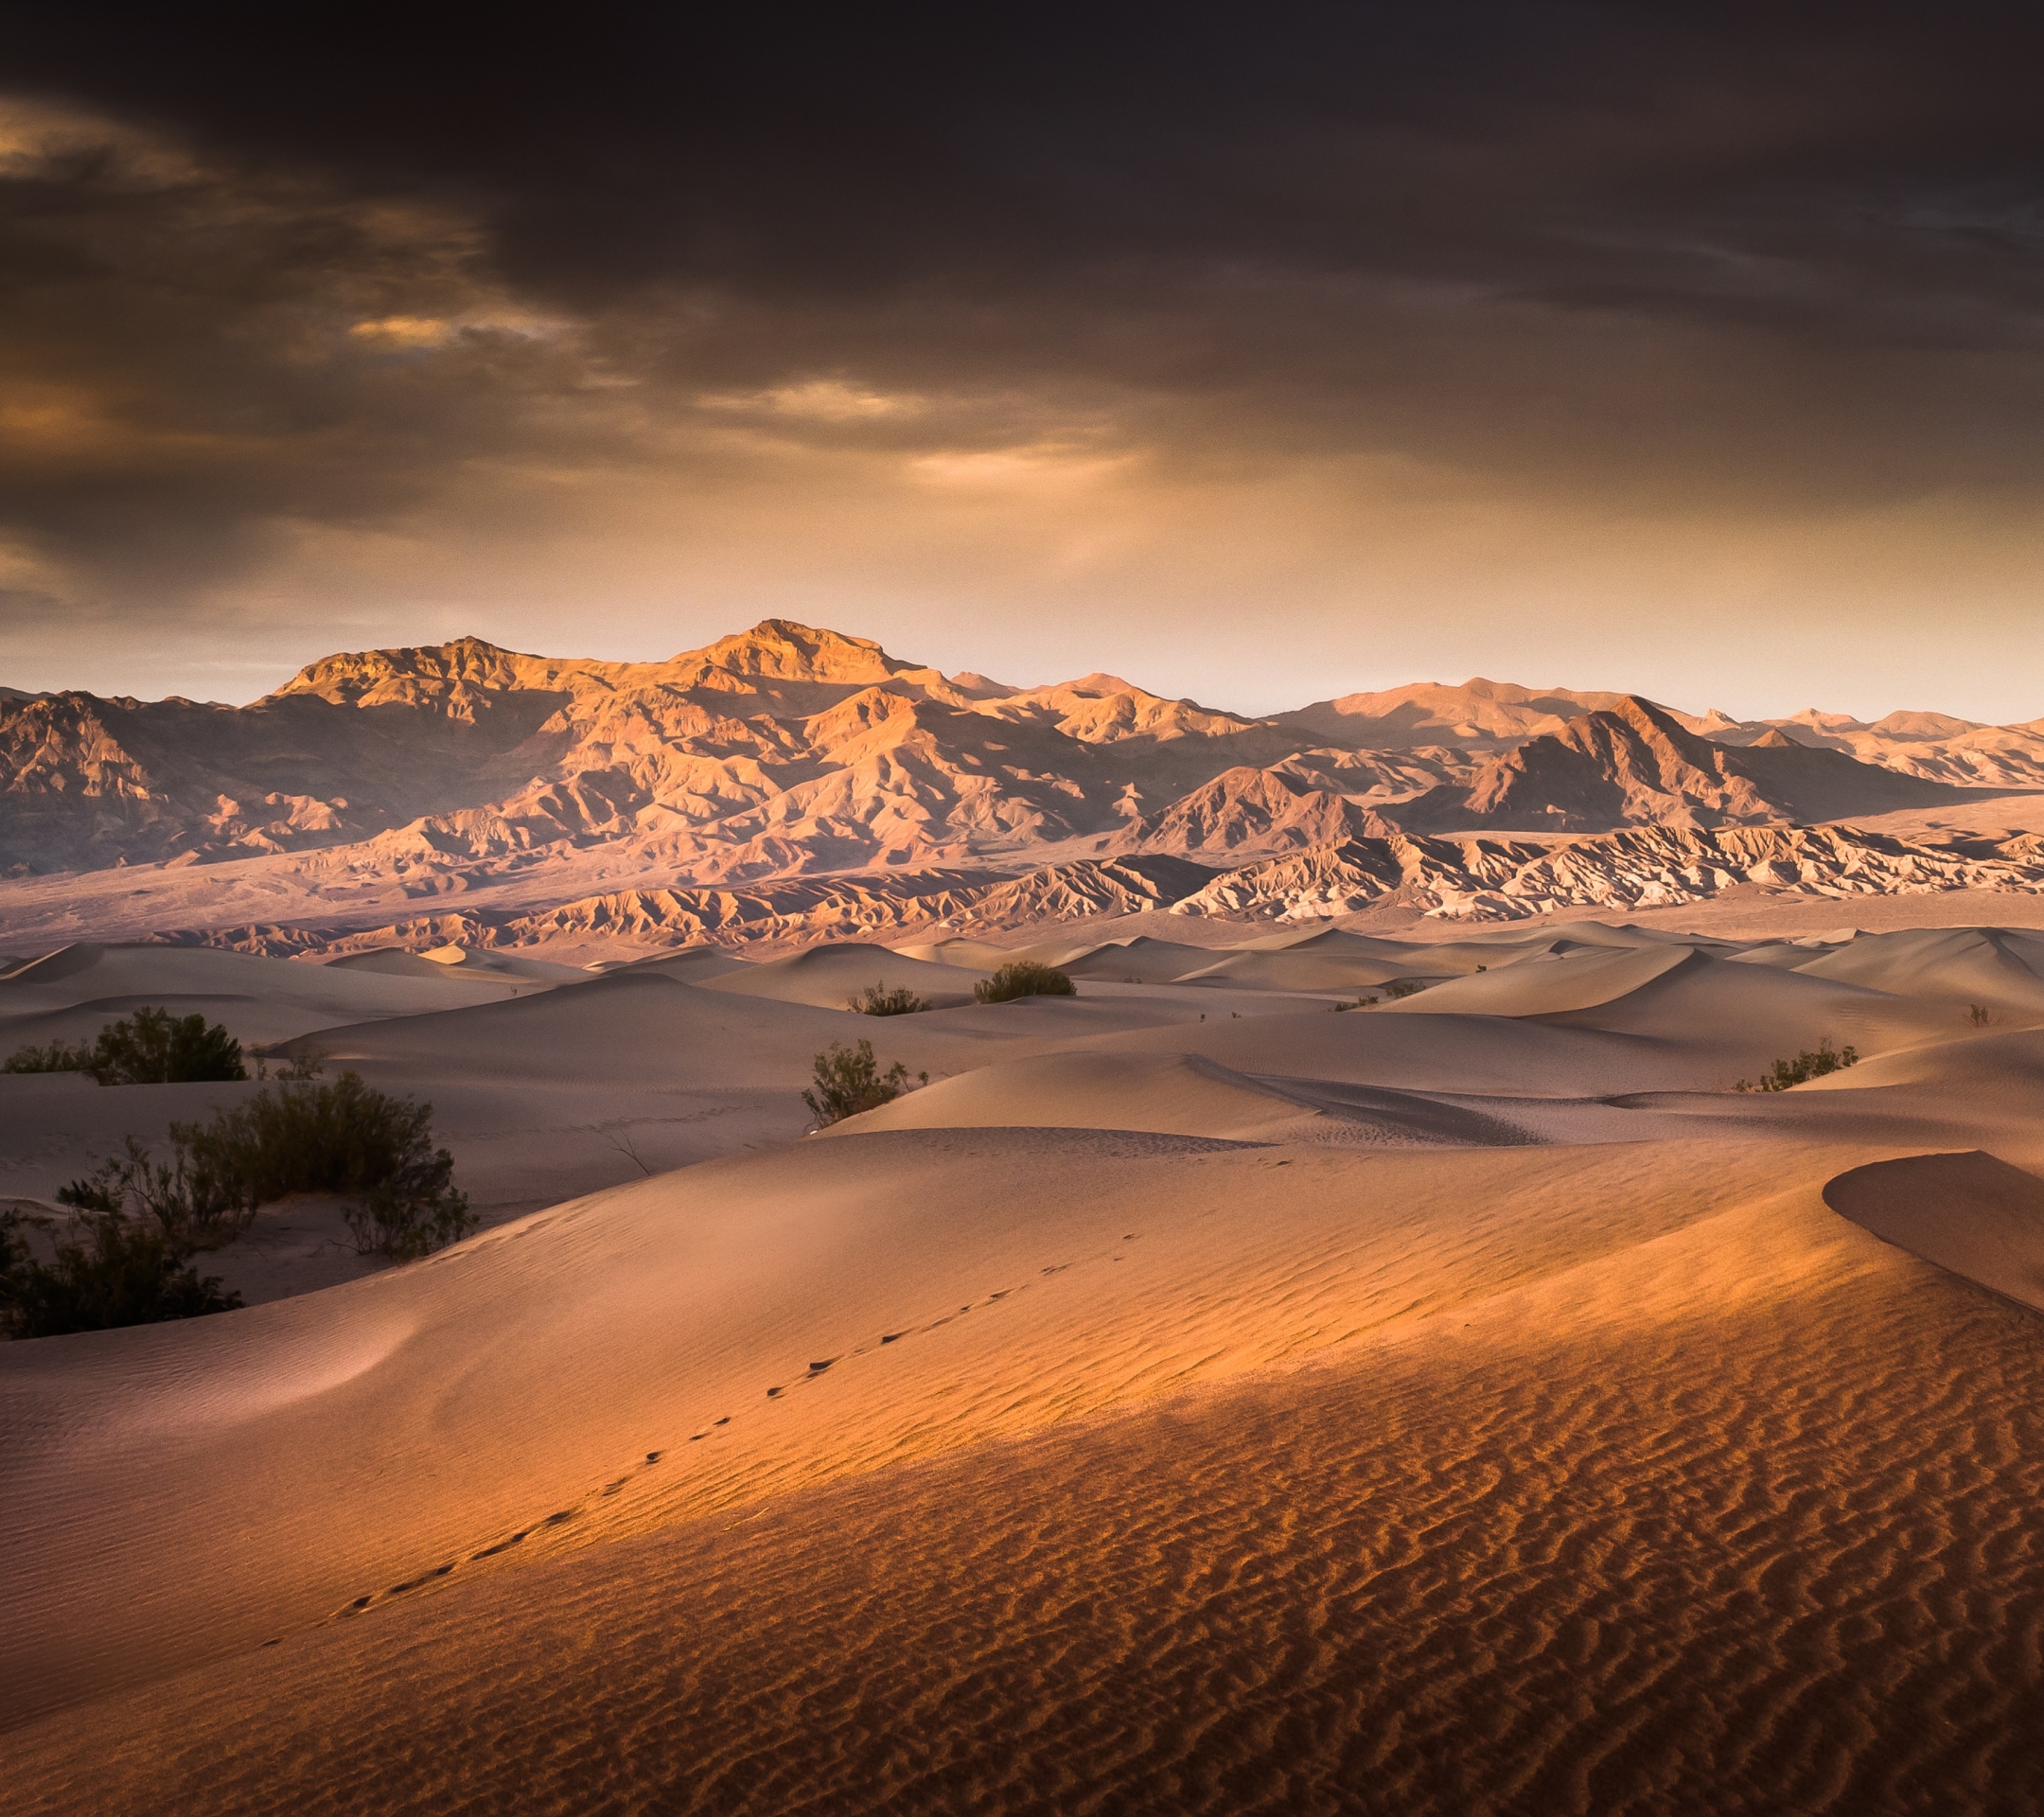 Скачать картинку Пейзаж, Природа, Песок, Пустыня, Дюна, Ландшафт, Земля/природа в телефон бесплатно.